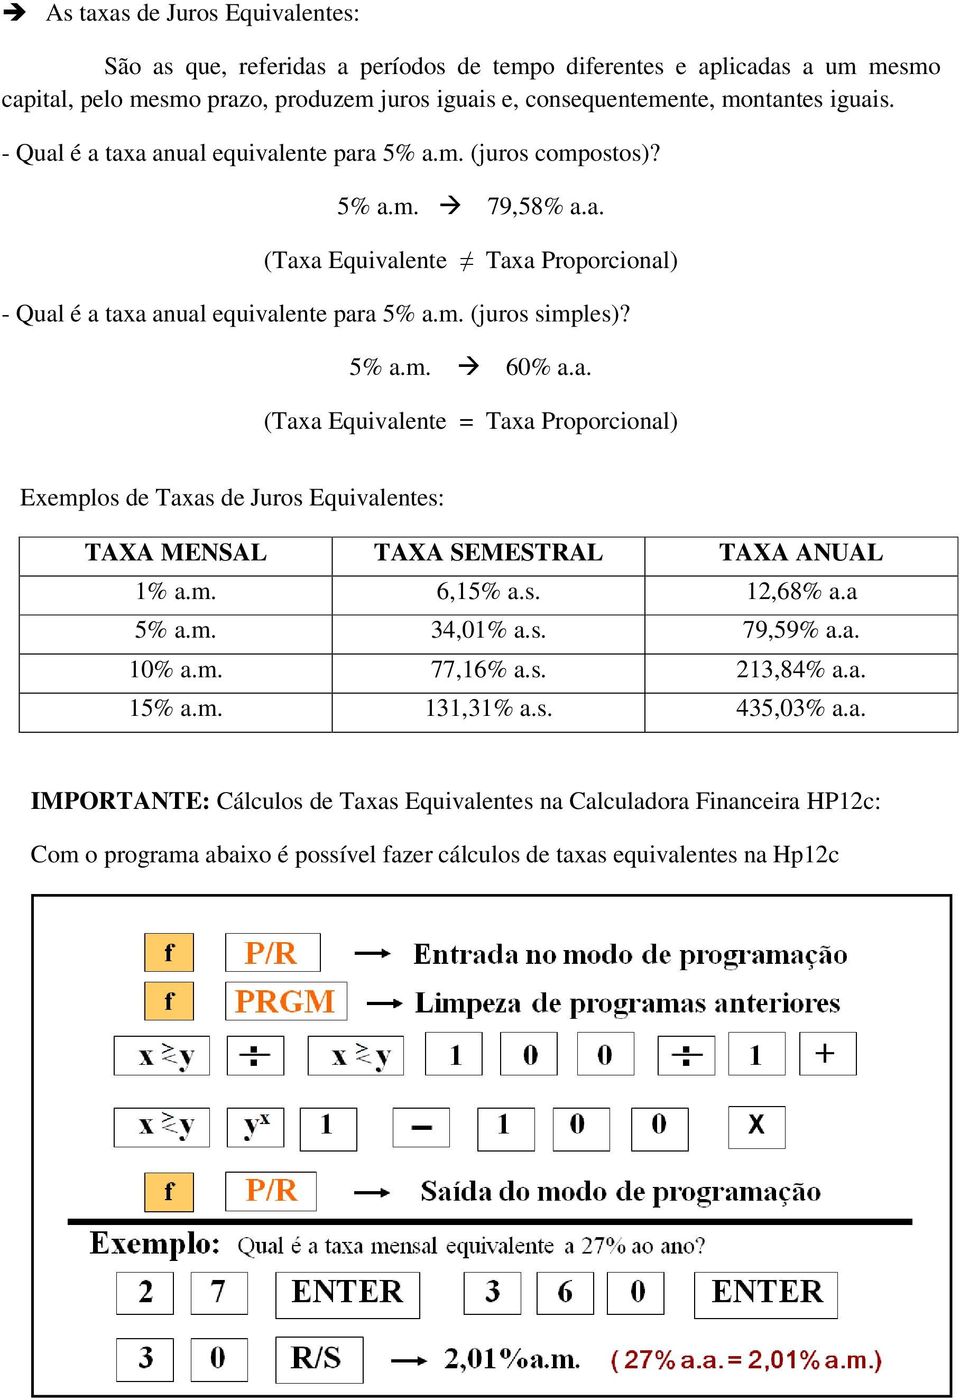 a. (Taxa Equivalente = Taxa Proporcional) Exemplos de Taxas de Juros Equivalentes: TAXA MENSAL TAXA SEMESTRAL TAXA ANUAL 1% a.m. 6,15% a.s. 12,68% a.a 5% a.m. 34,01% a.s. 79,59% a.a. 10% a.m. 77,16% a.